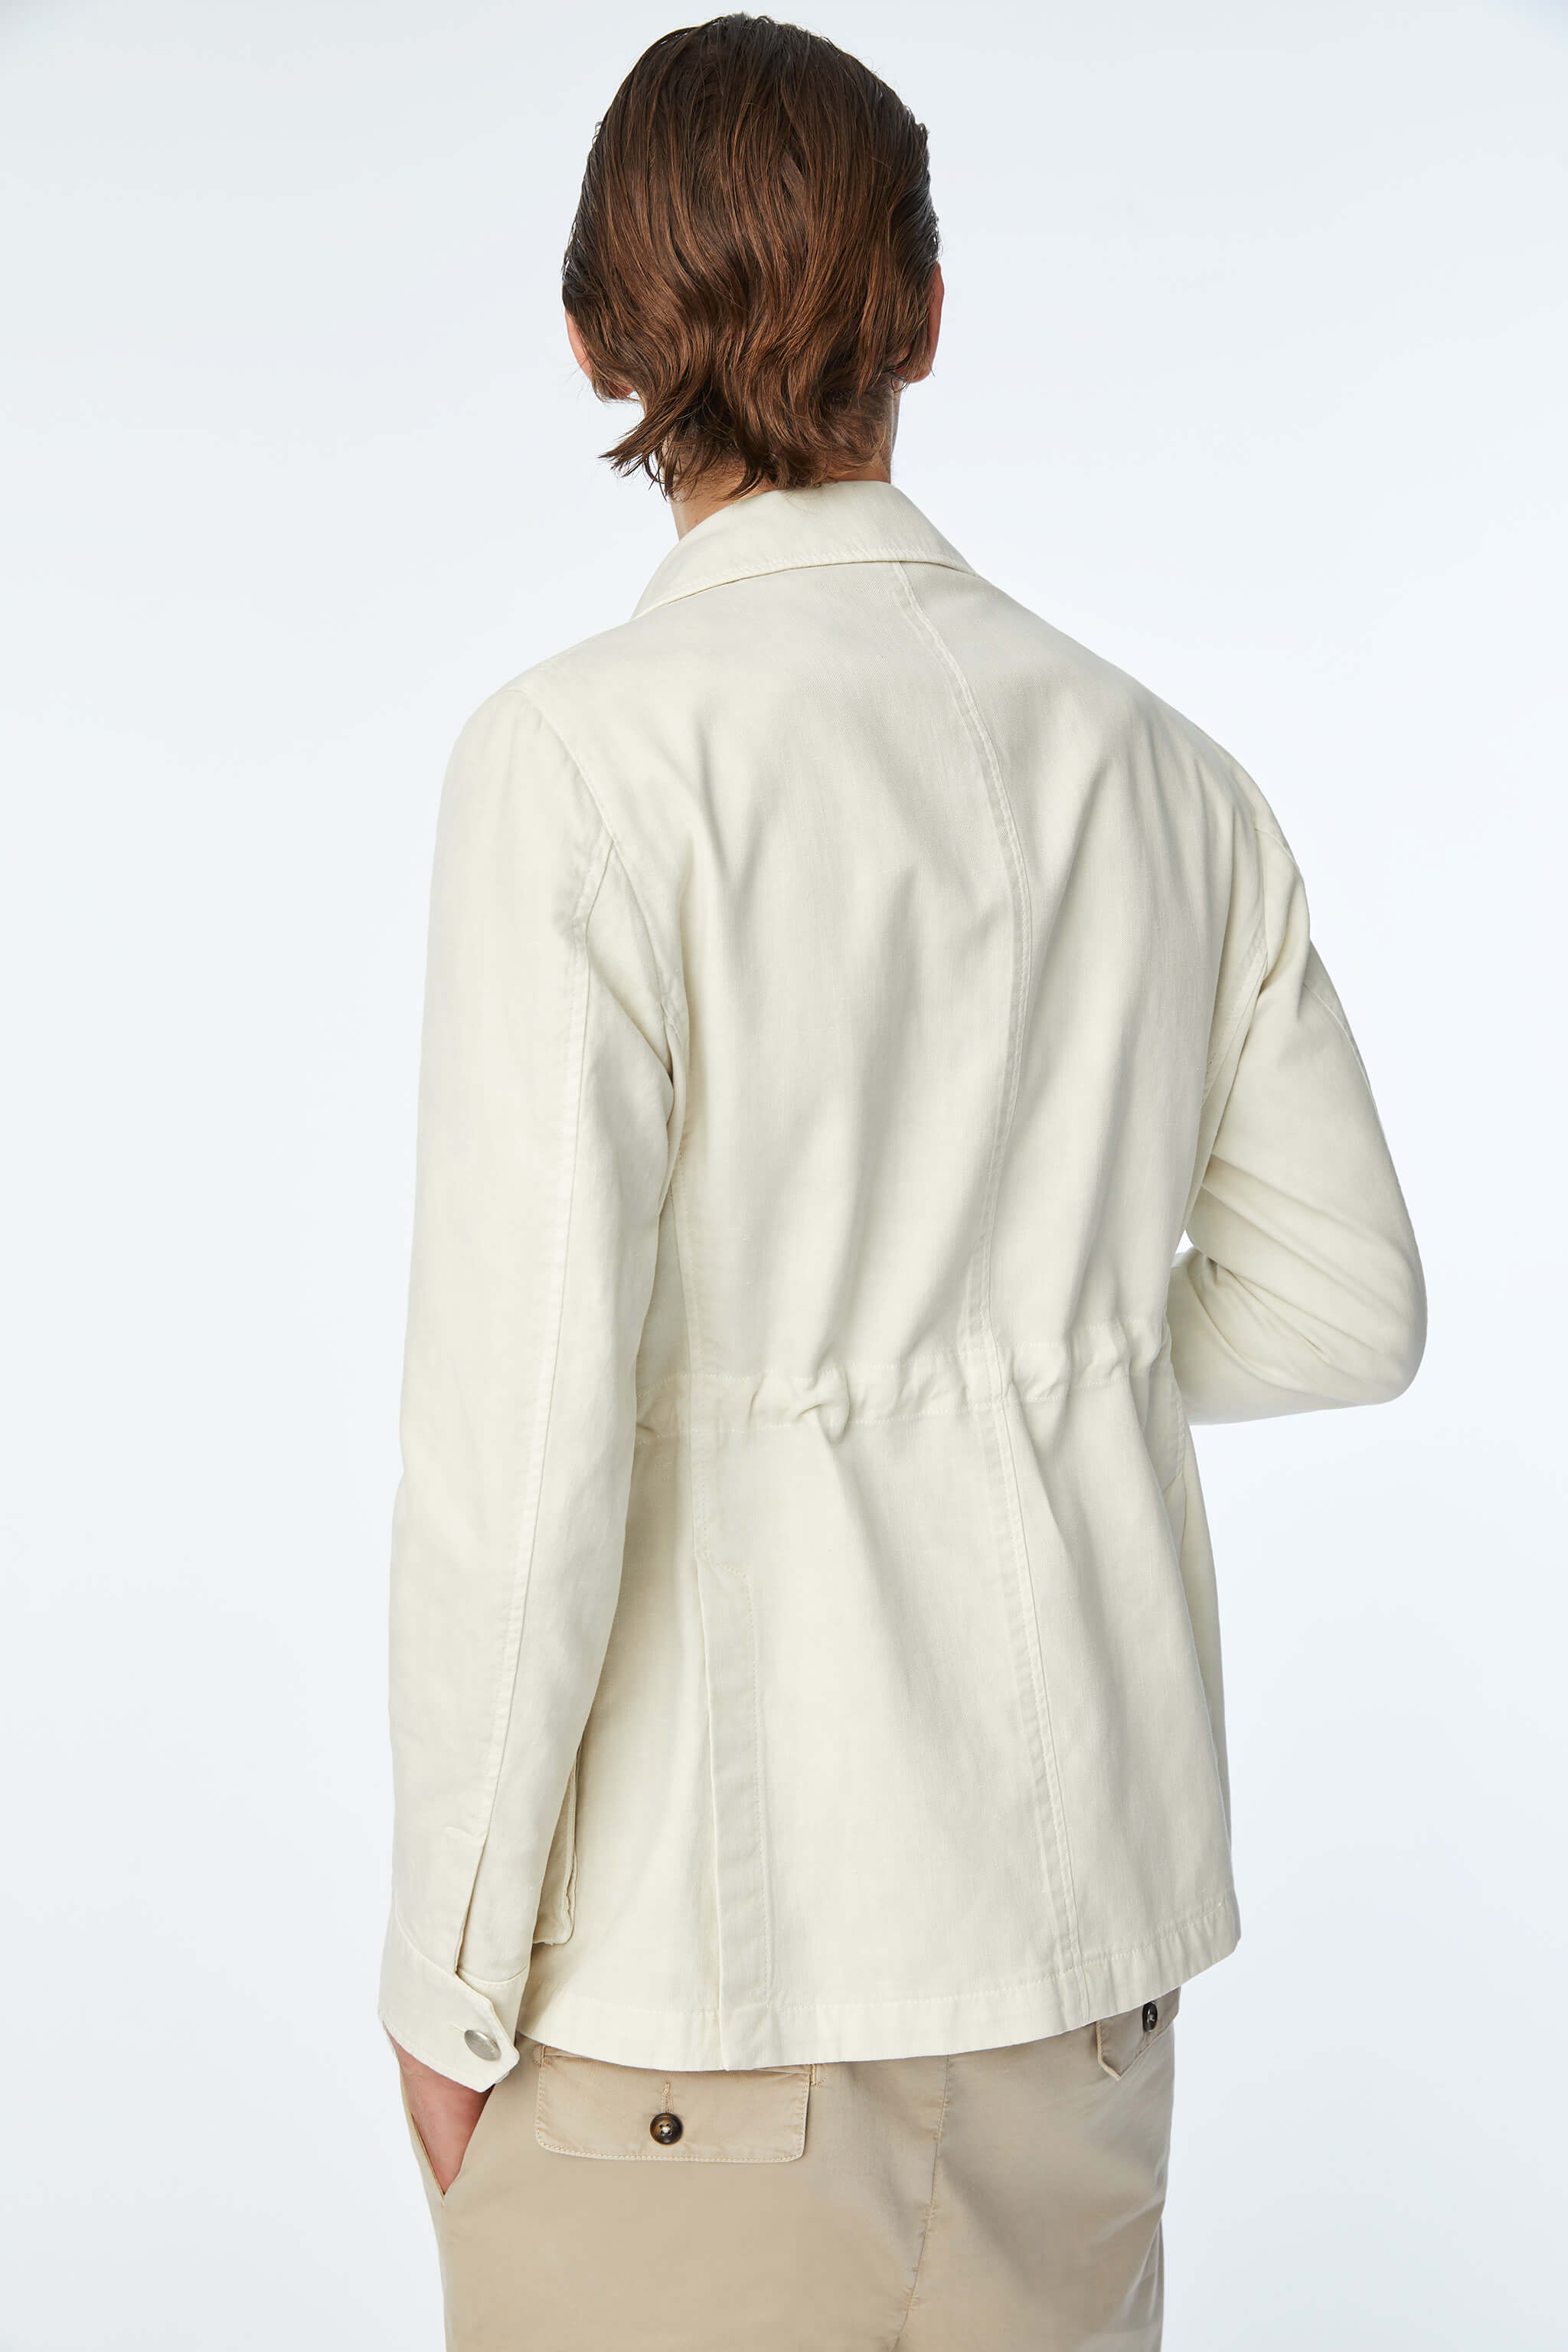 Garment-dyed SAHARA jacket in White